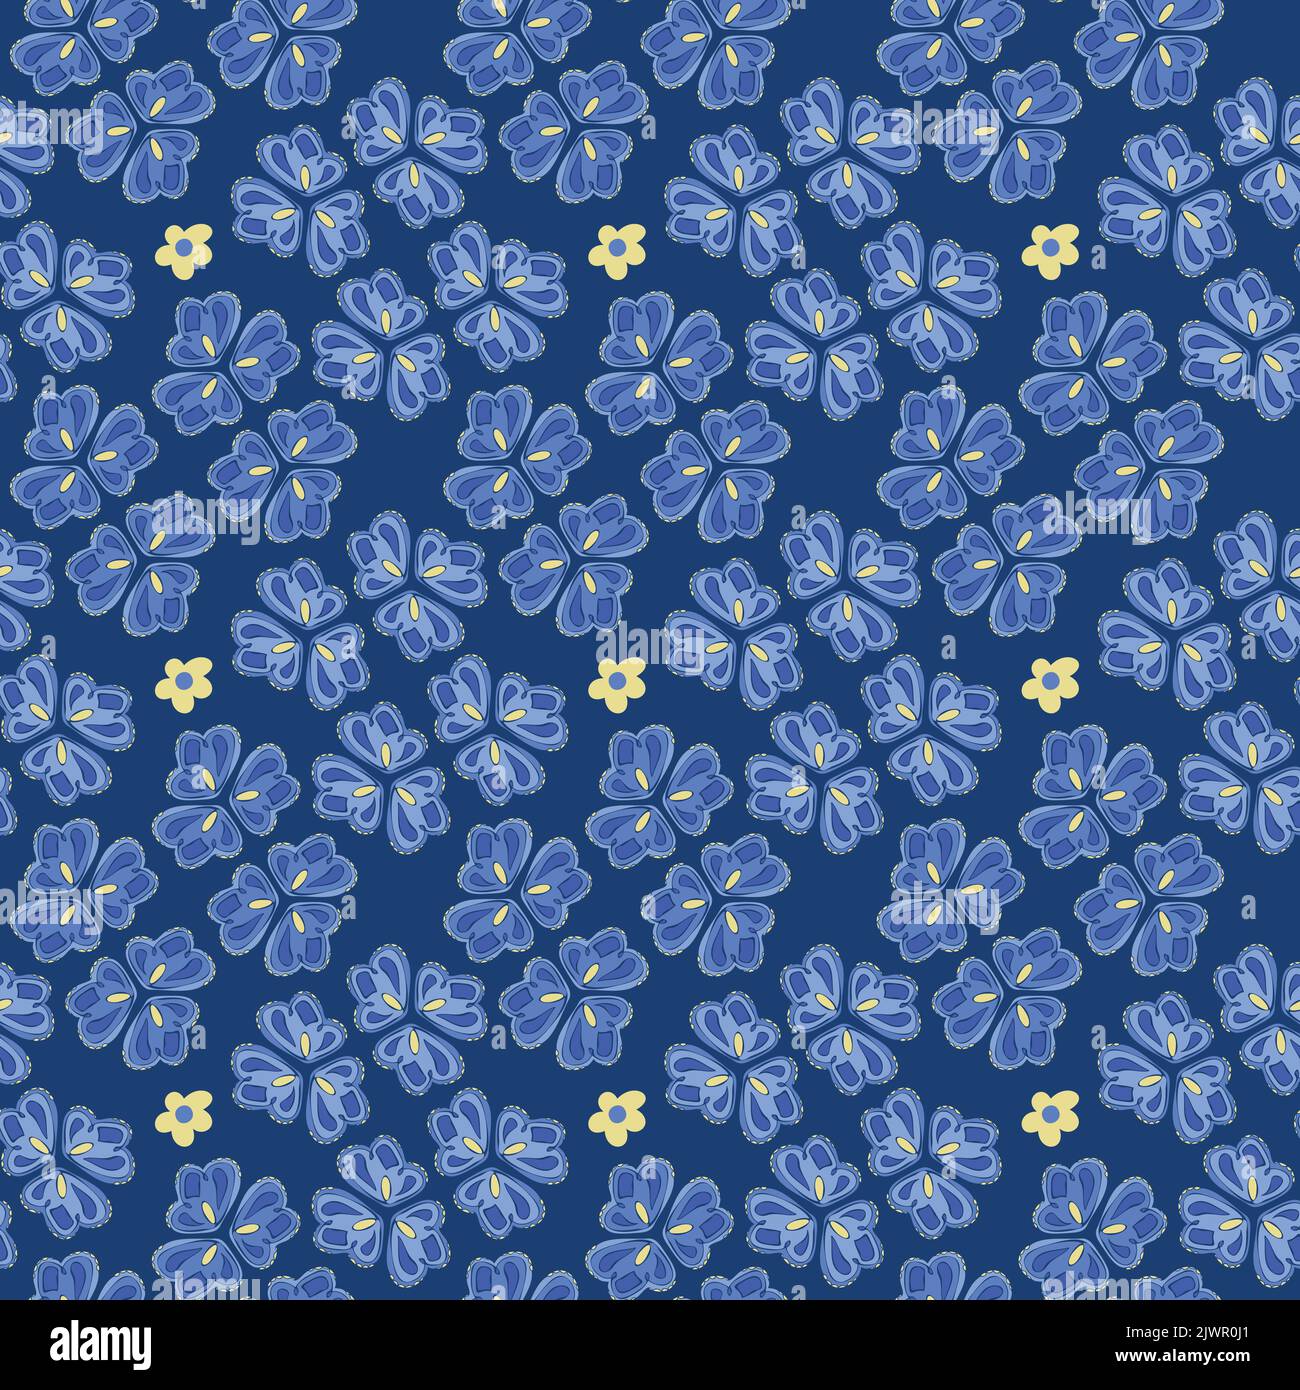 Vektor nahtlose Muster mit blauen Blumen. Handgezeichnetes Dessin mit dekorativen Blumen. Stock Vektor